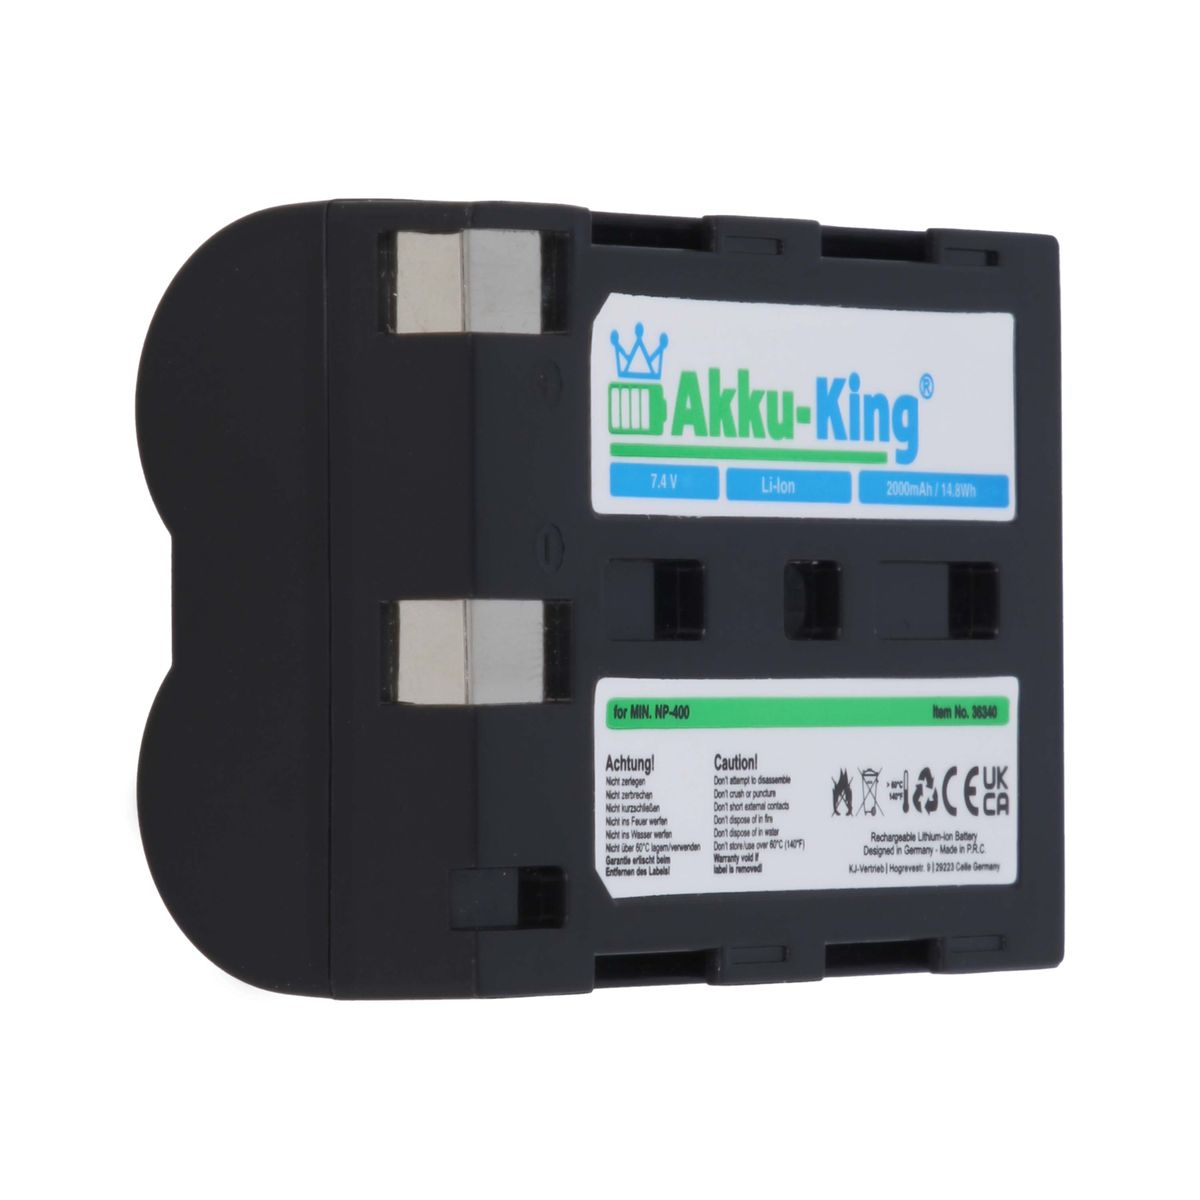 AKKU-KING Akku kompatibel mit 7.4 2000mAh Li-Ion Minolta NP-400 Kamera-Akku, Volt